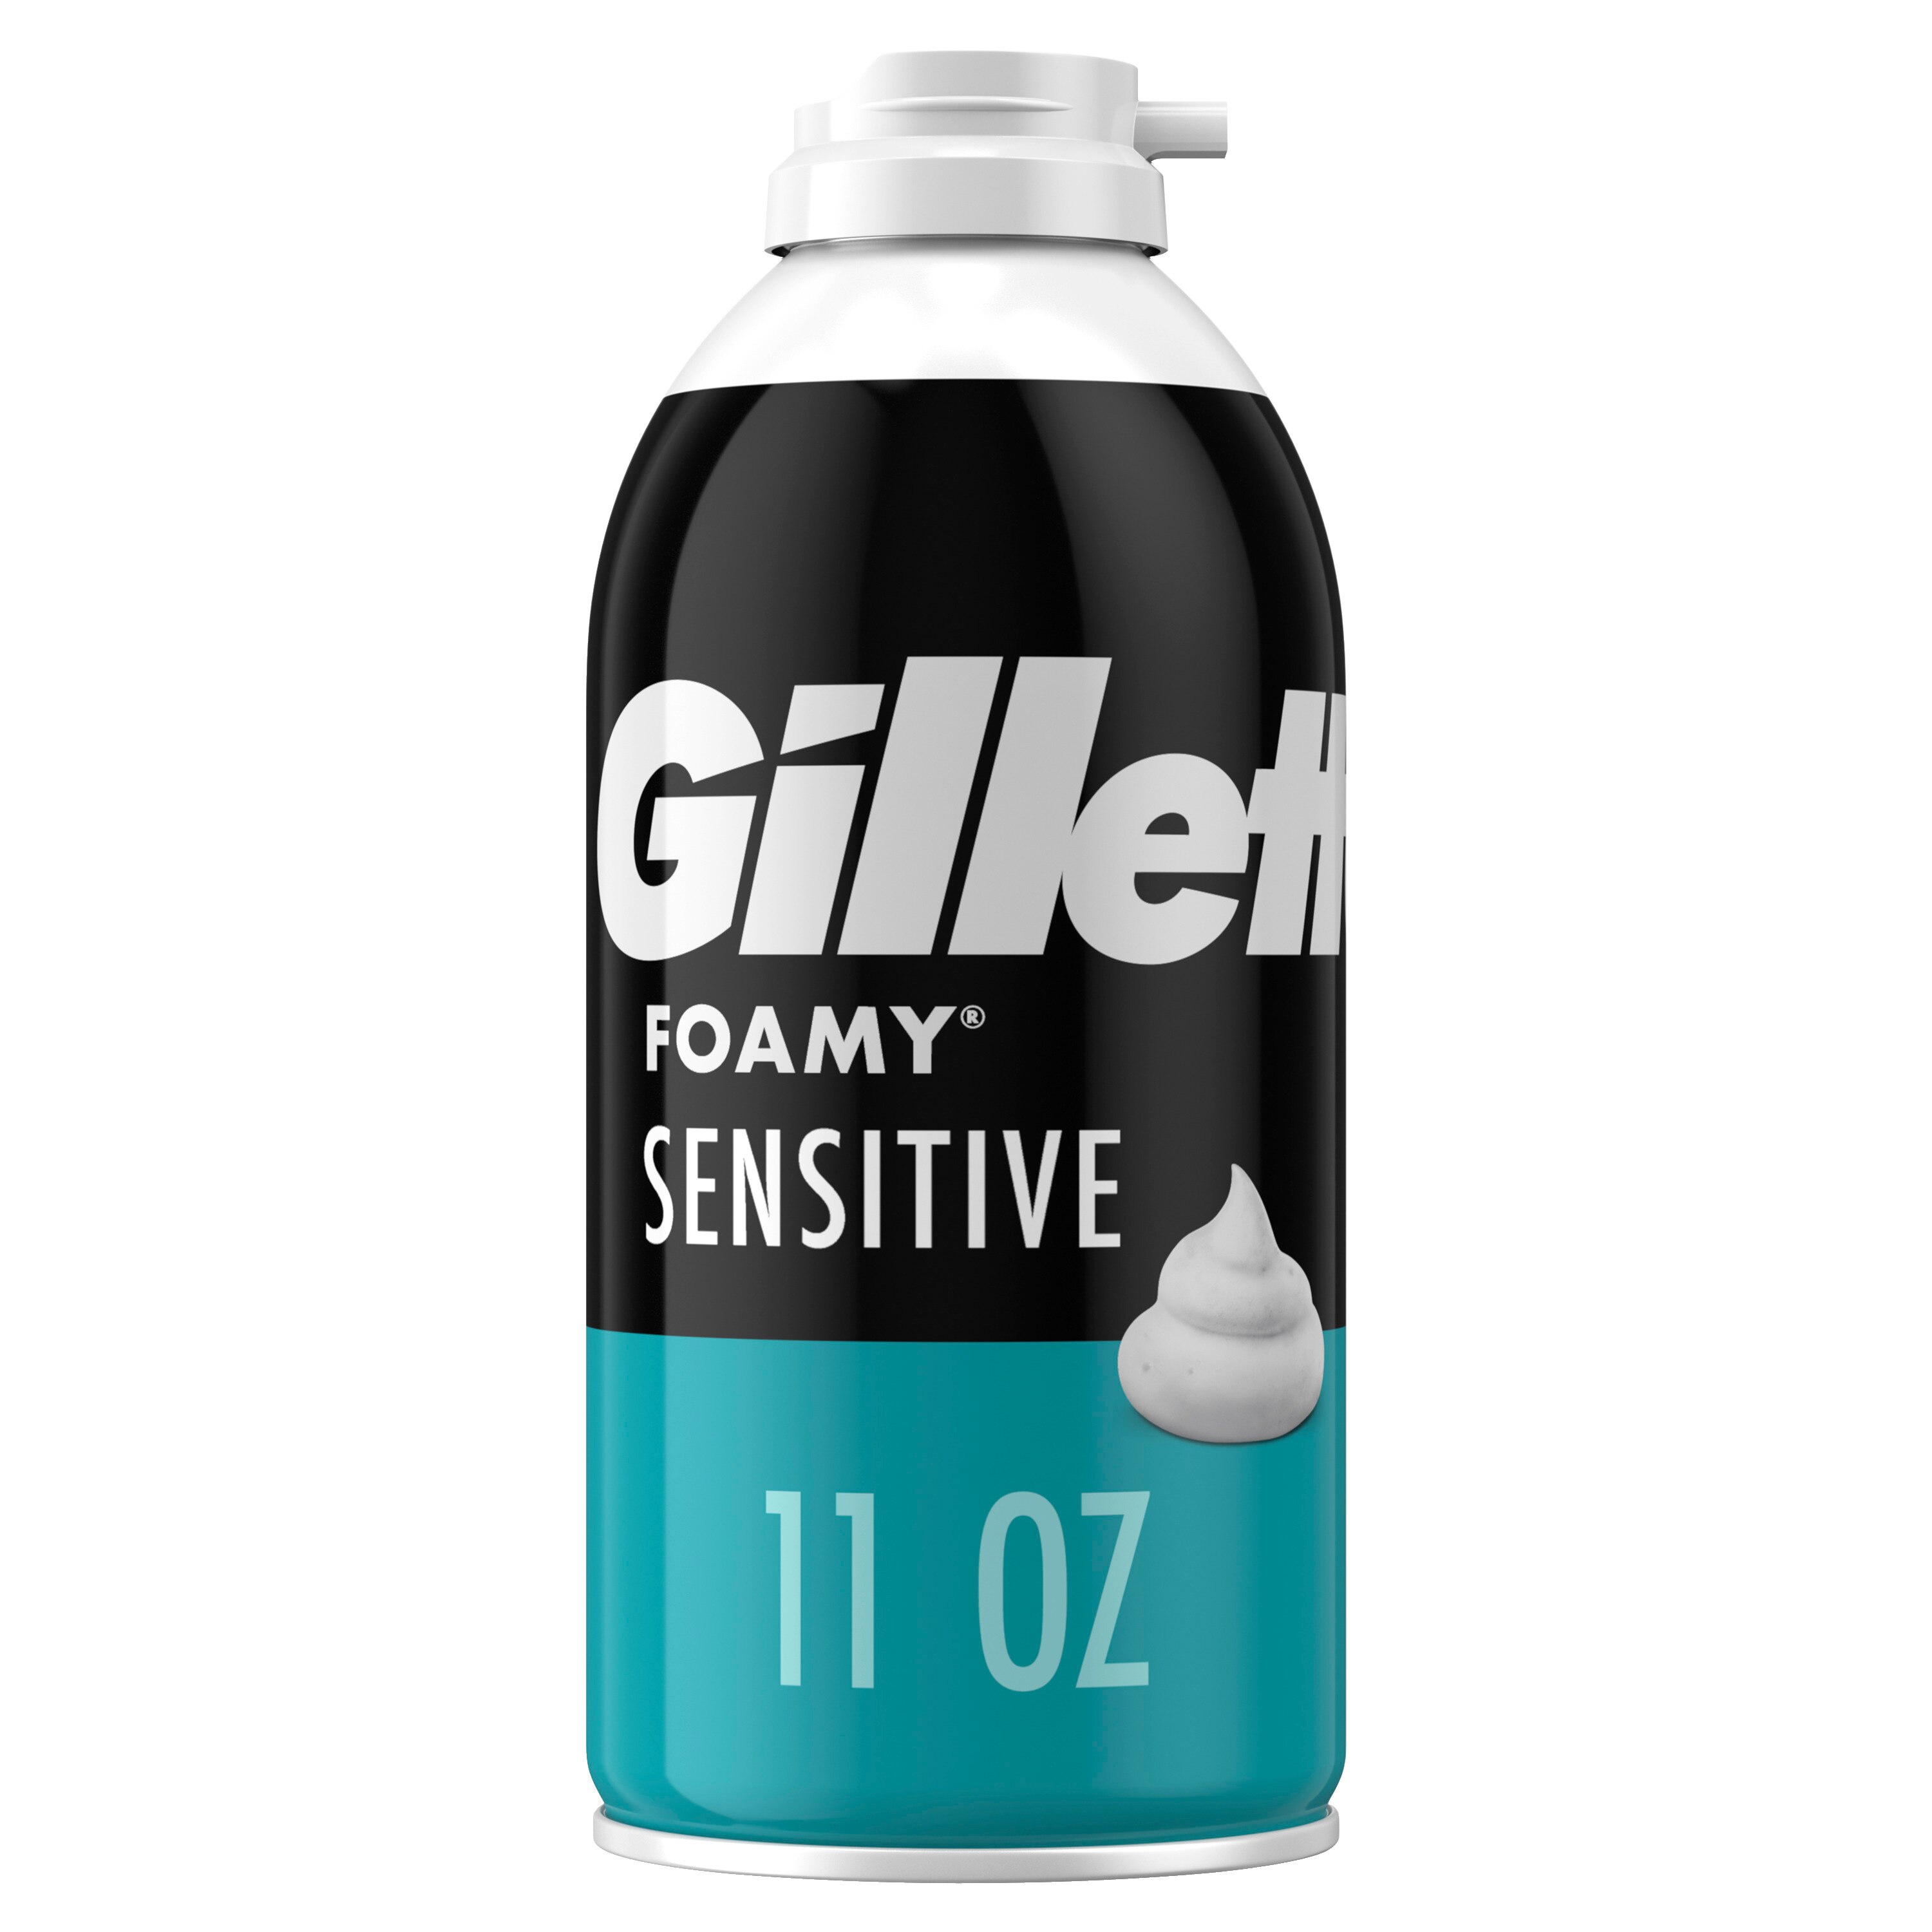 Gillette Foamy Sensitive Shave Cream, 11 OZ